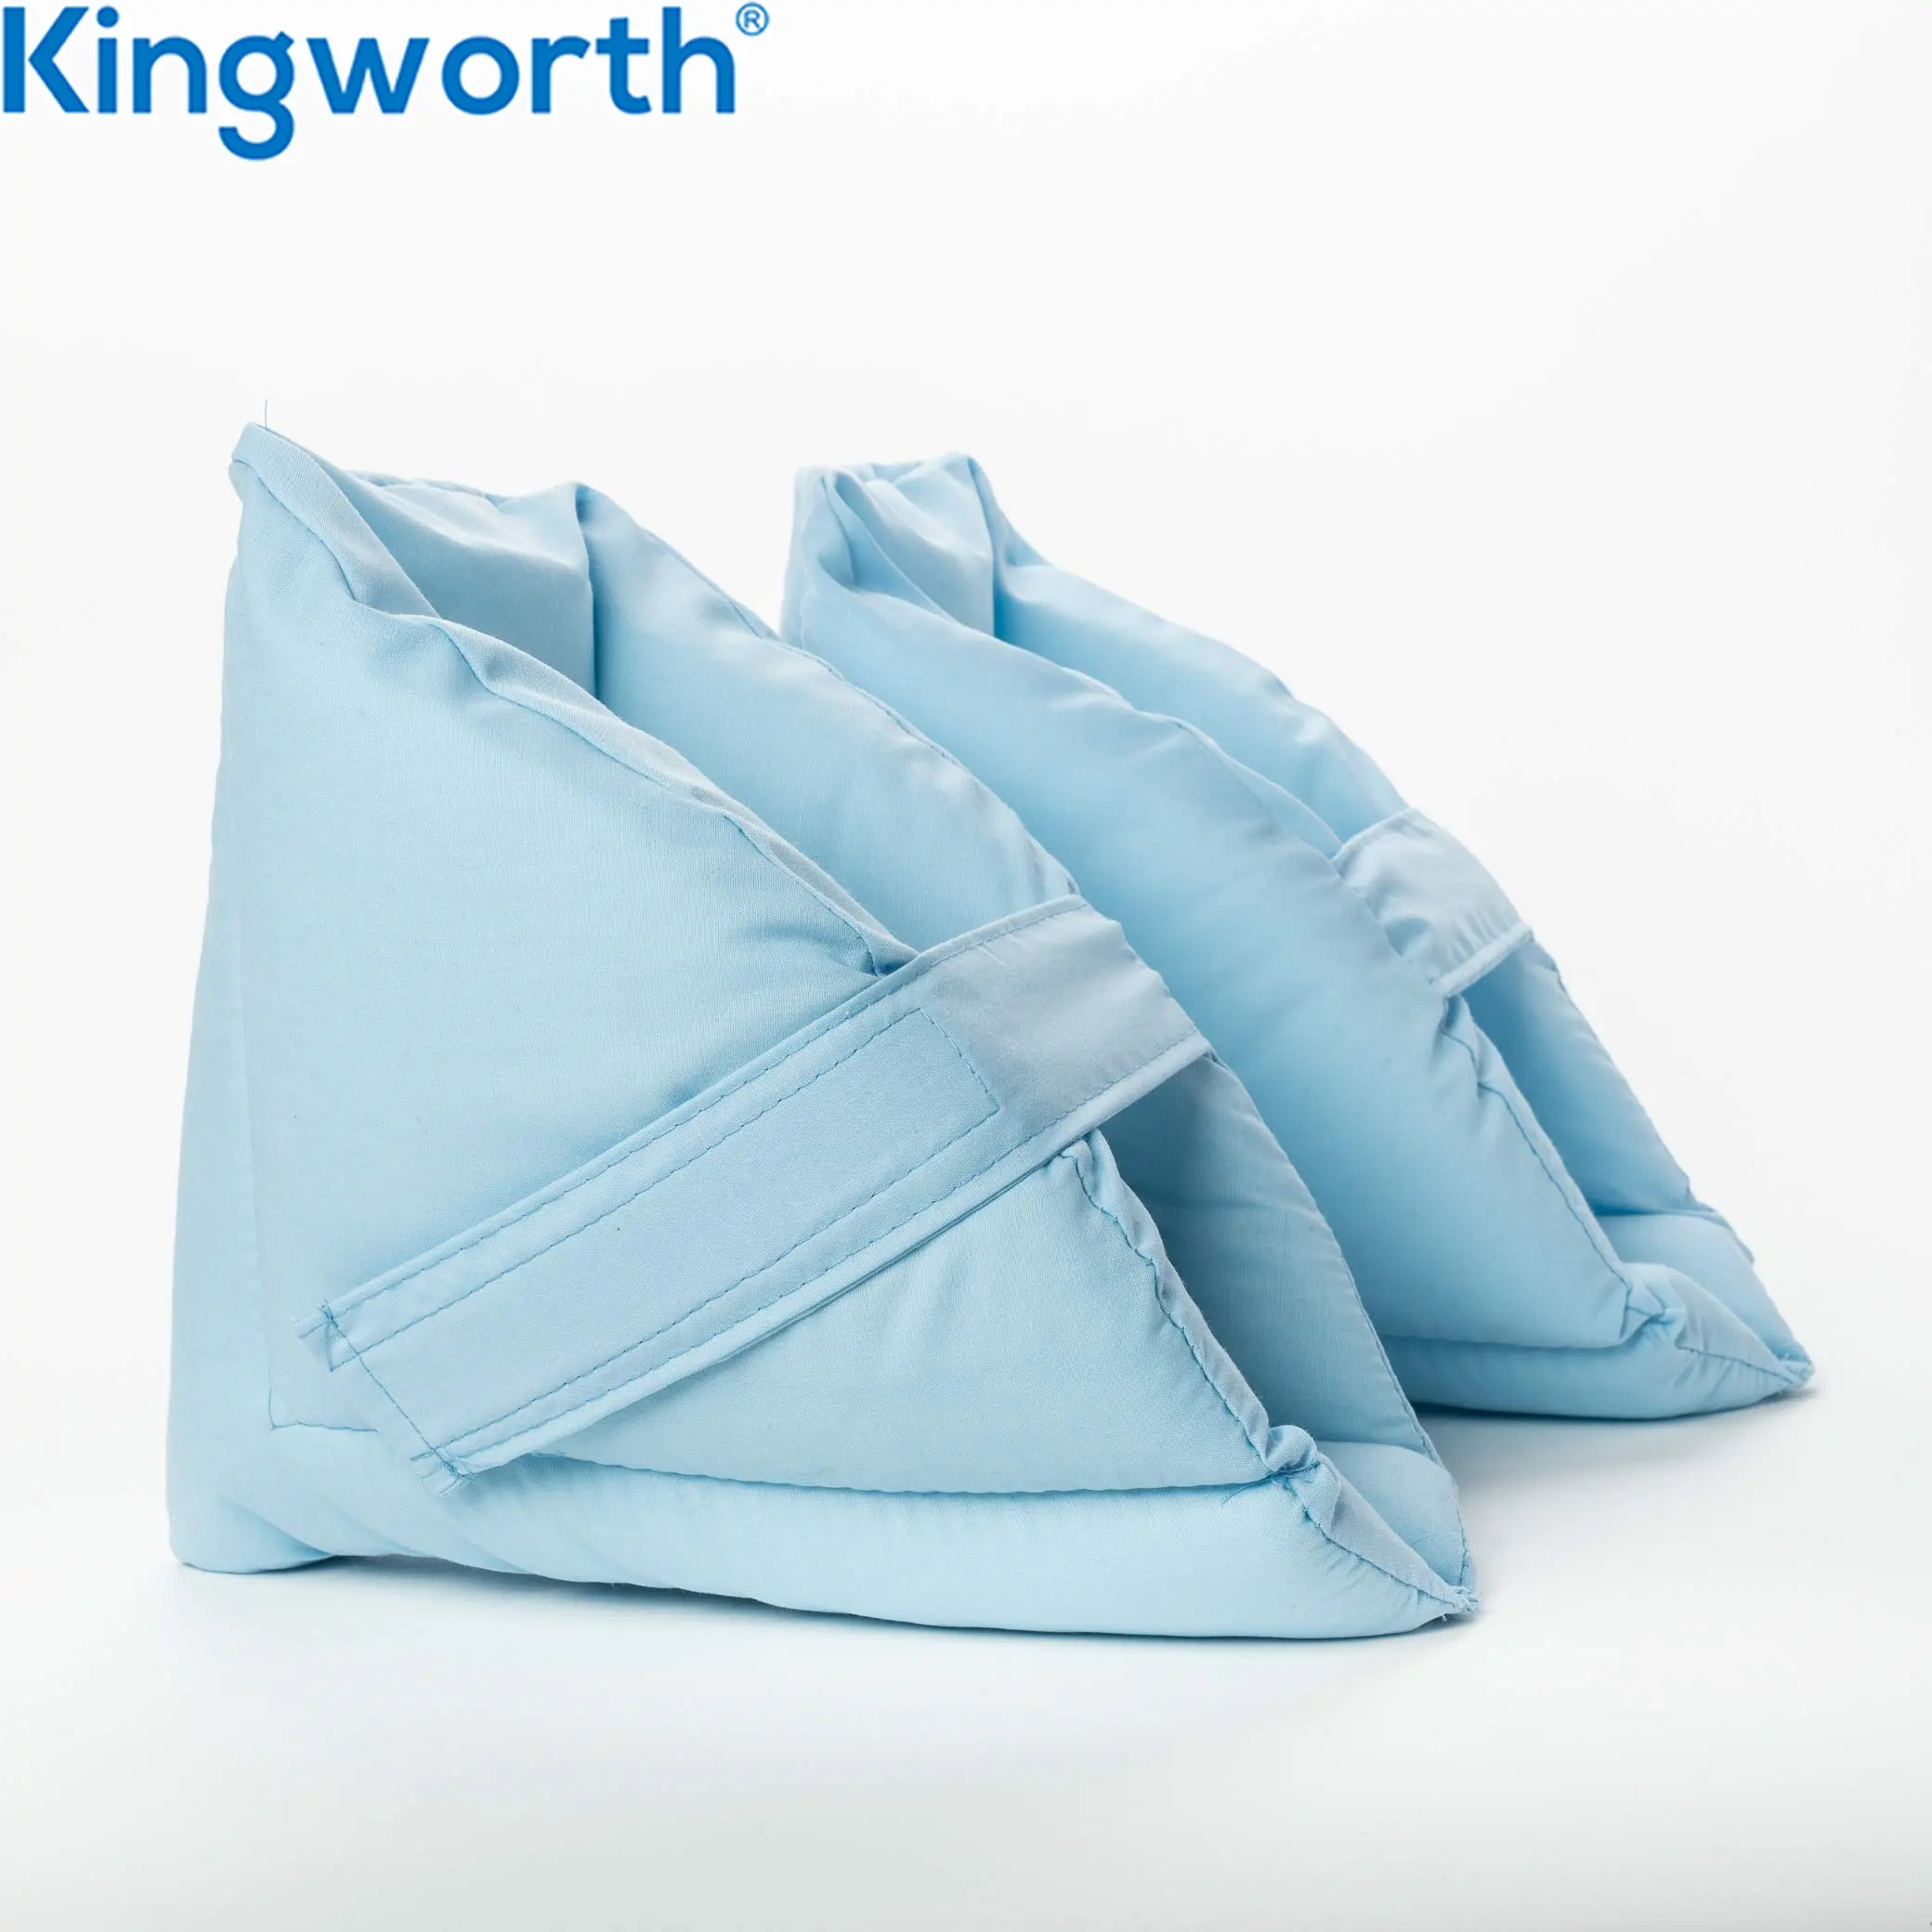 Kingworth koruma rölyef yastık şişmiş ayak konfor ayak yastık topuk koruyucu